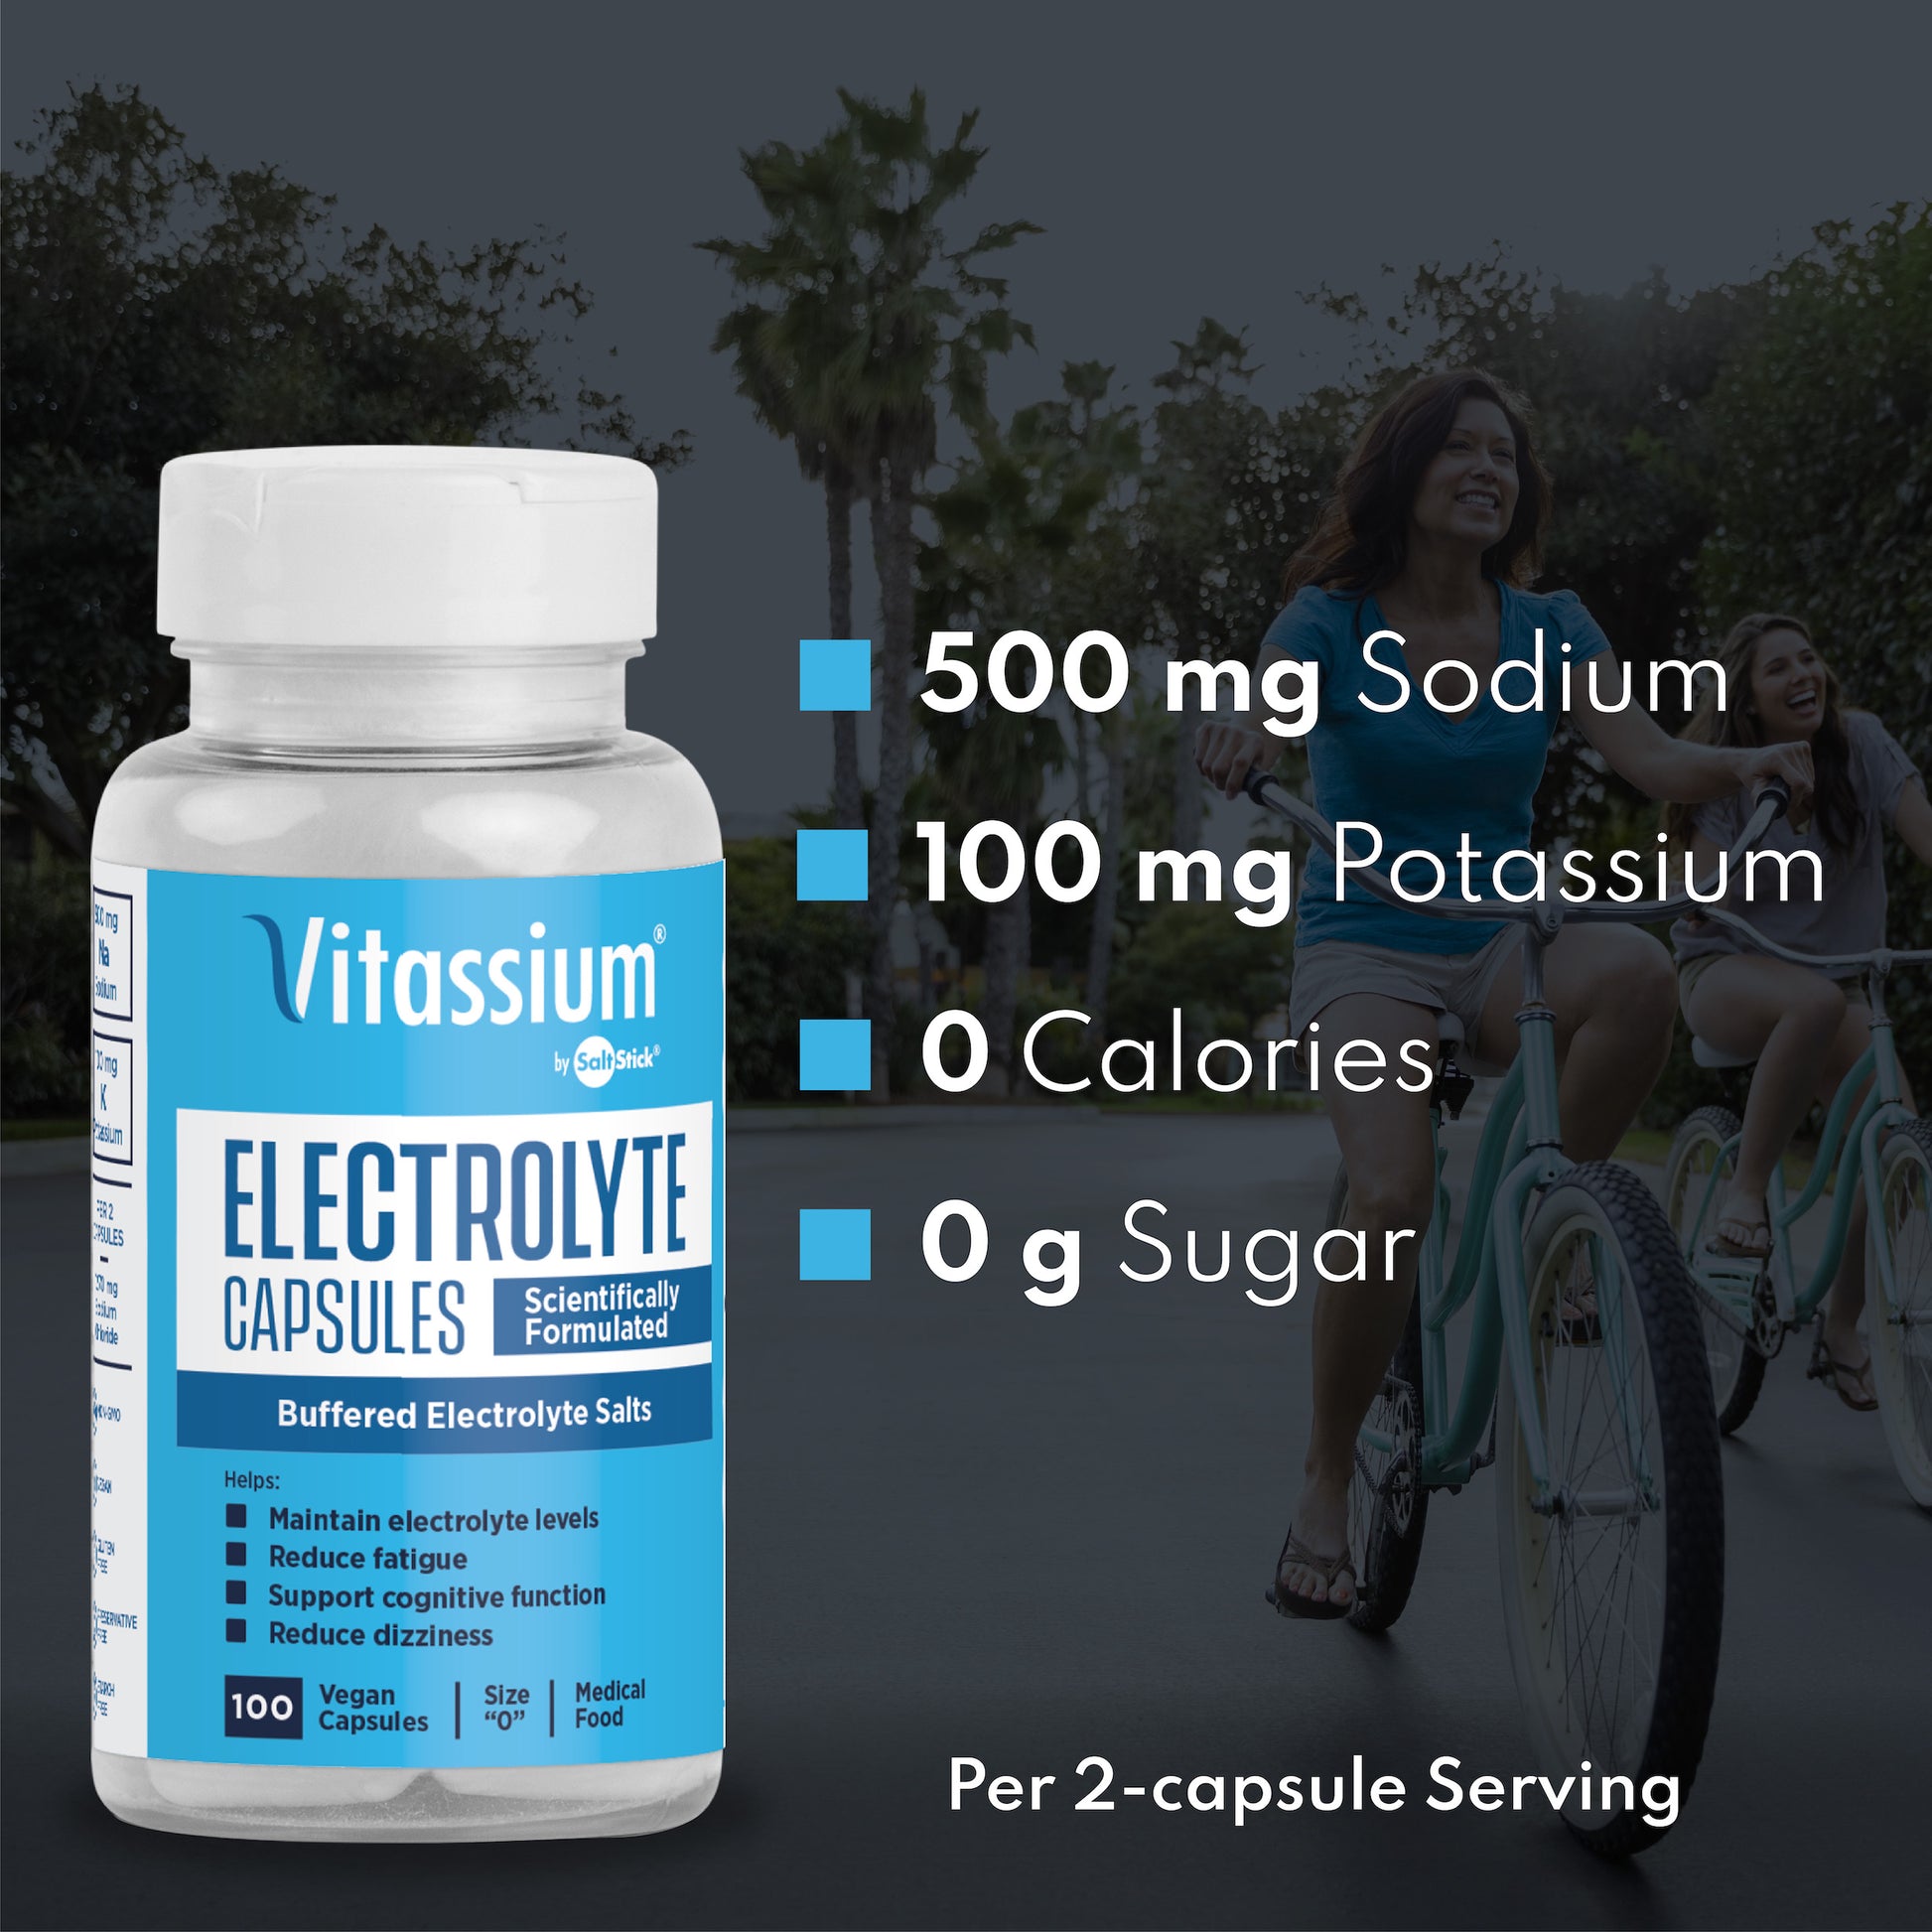 Vitassium contains 500gm of sodium, 100mg of potassium, 0 calories, and 0g of sugar per 2-capsule serving.